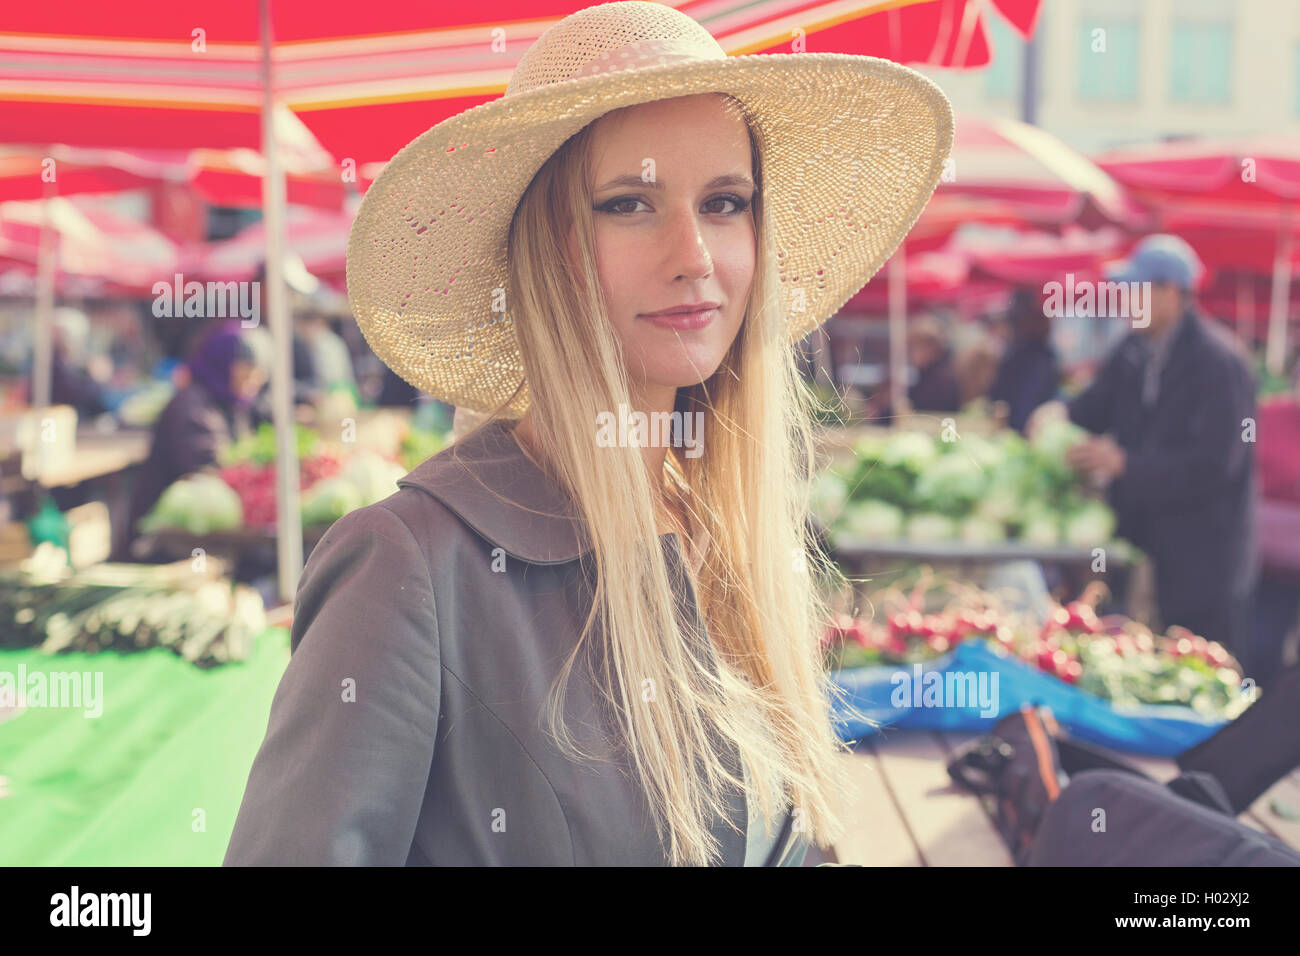 Portrait of attractive blonde fille avec chapeau de paille sur le marché. Poste a traité avec filtre vintage. Banque D'Images